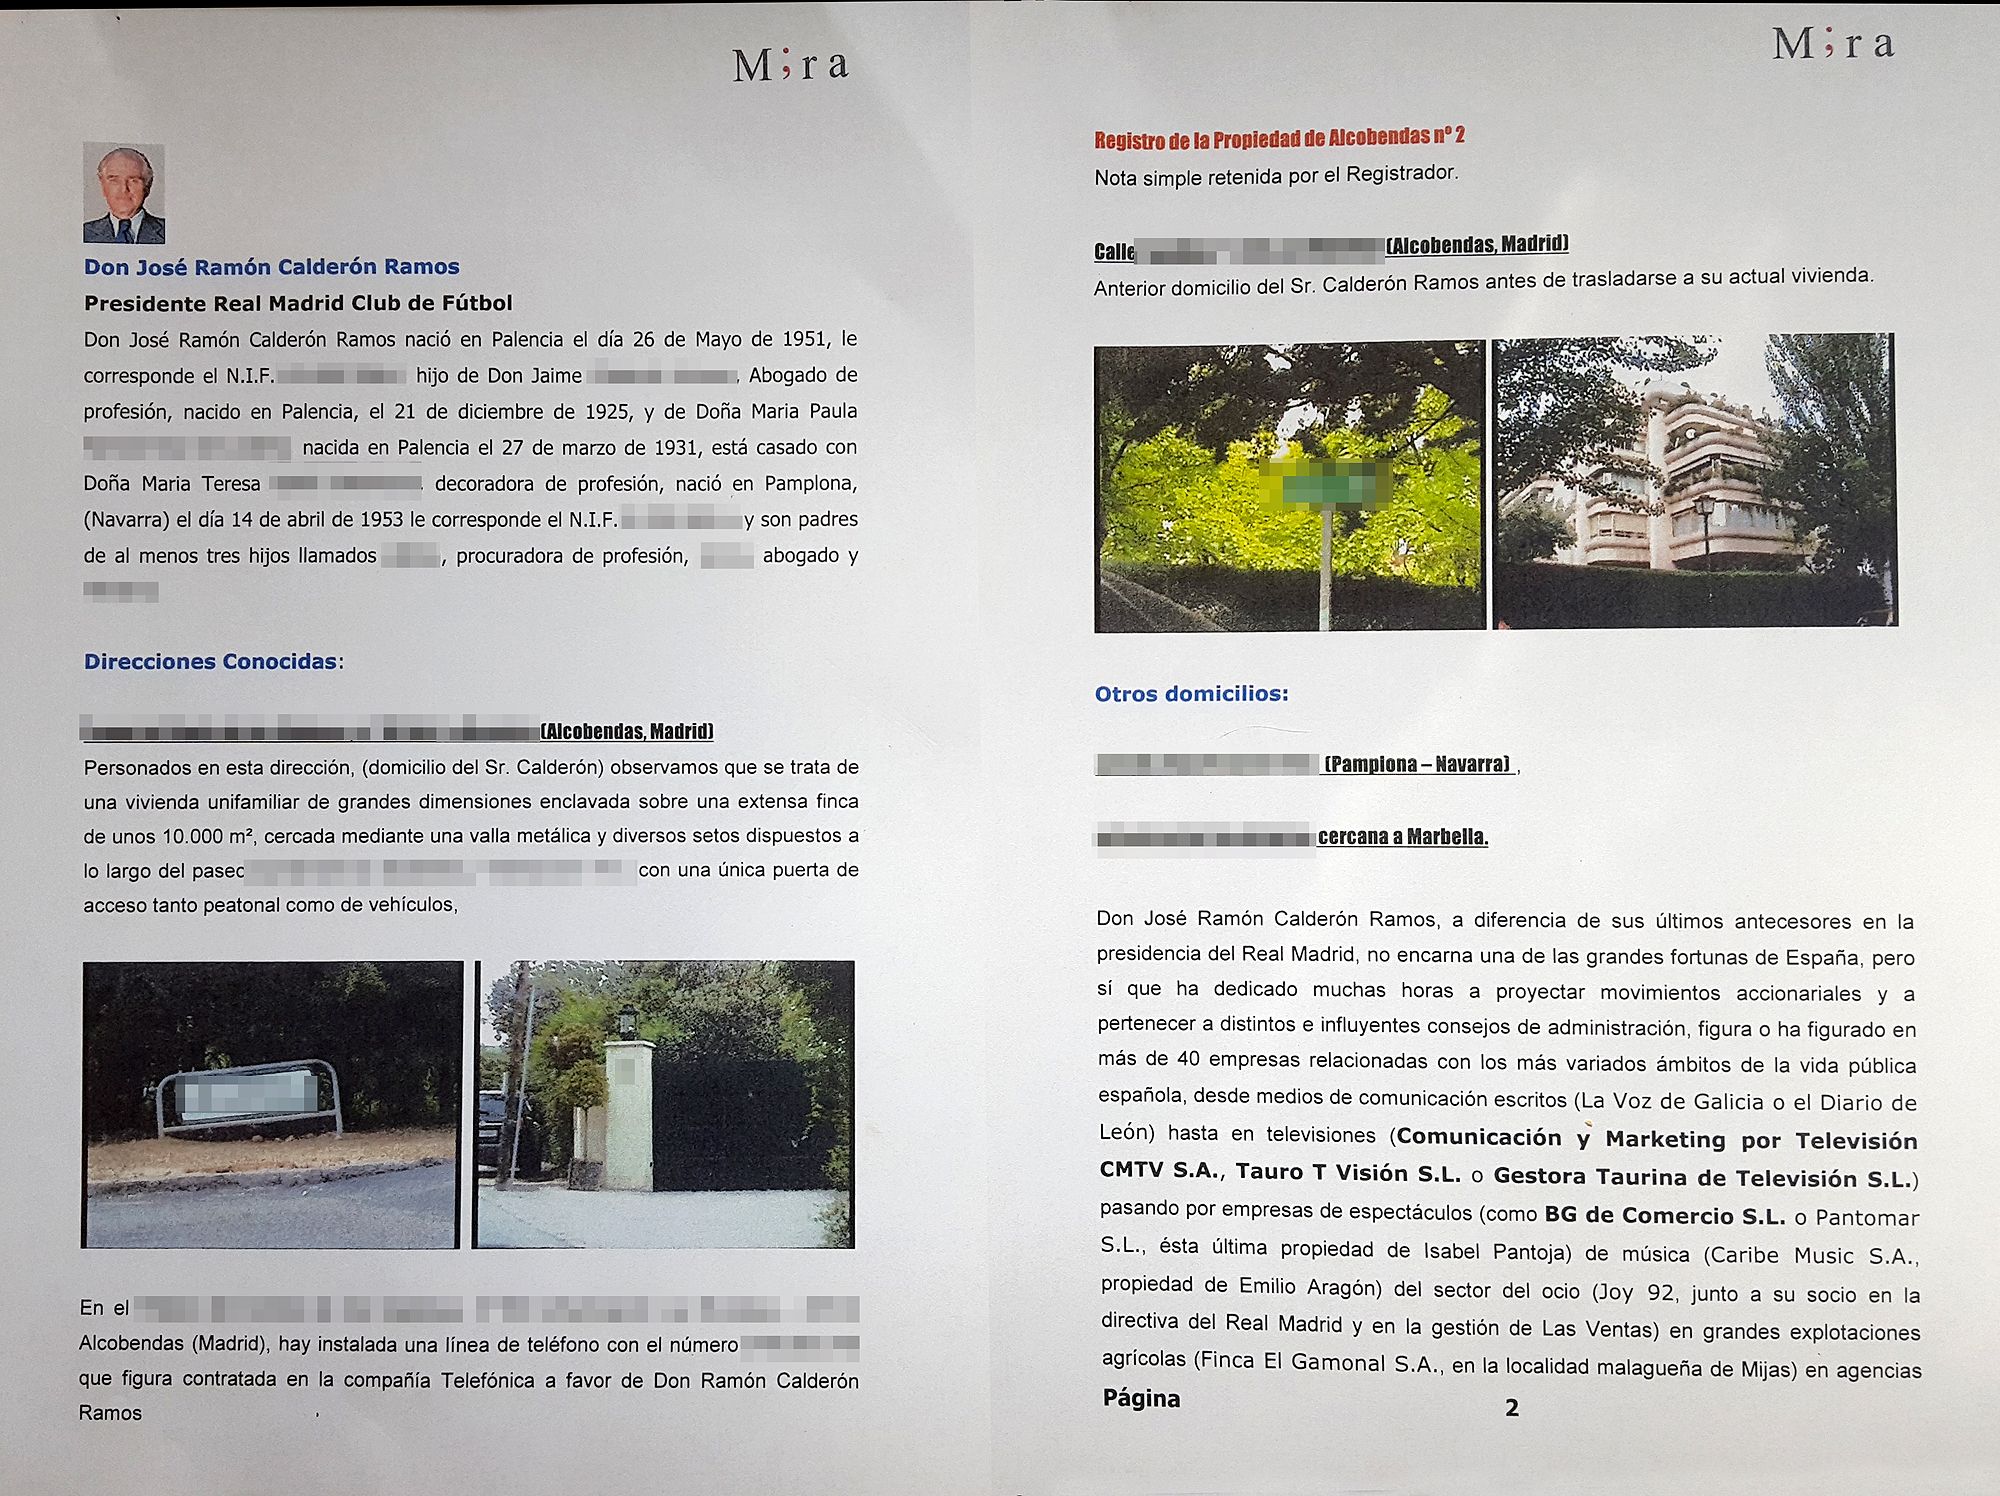  Las primeras páginas del dossier que la agencia de detectives Mira elaboró sobre Ramón Calderón